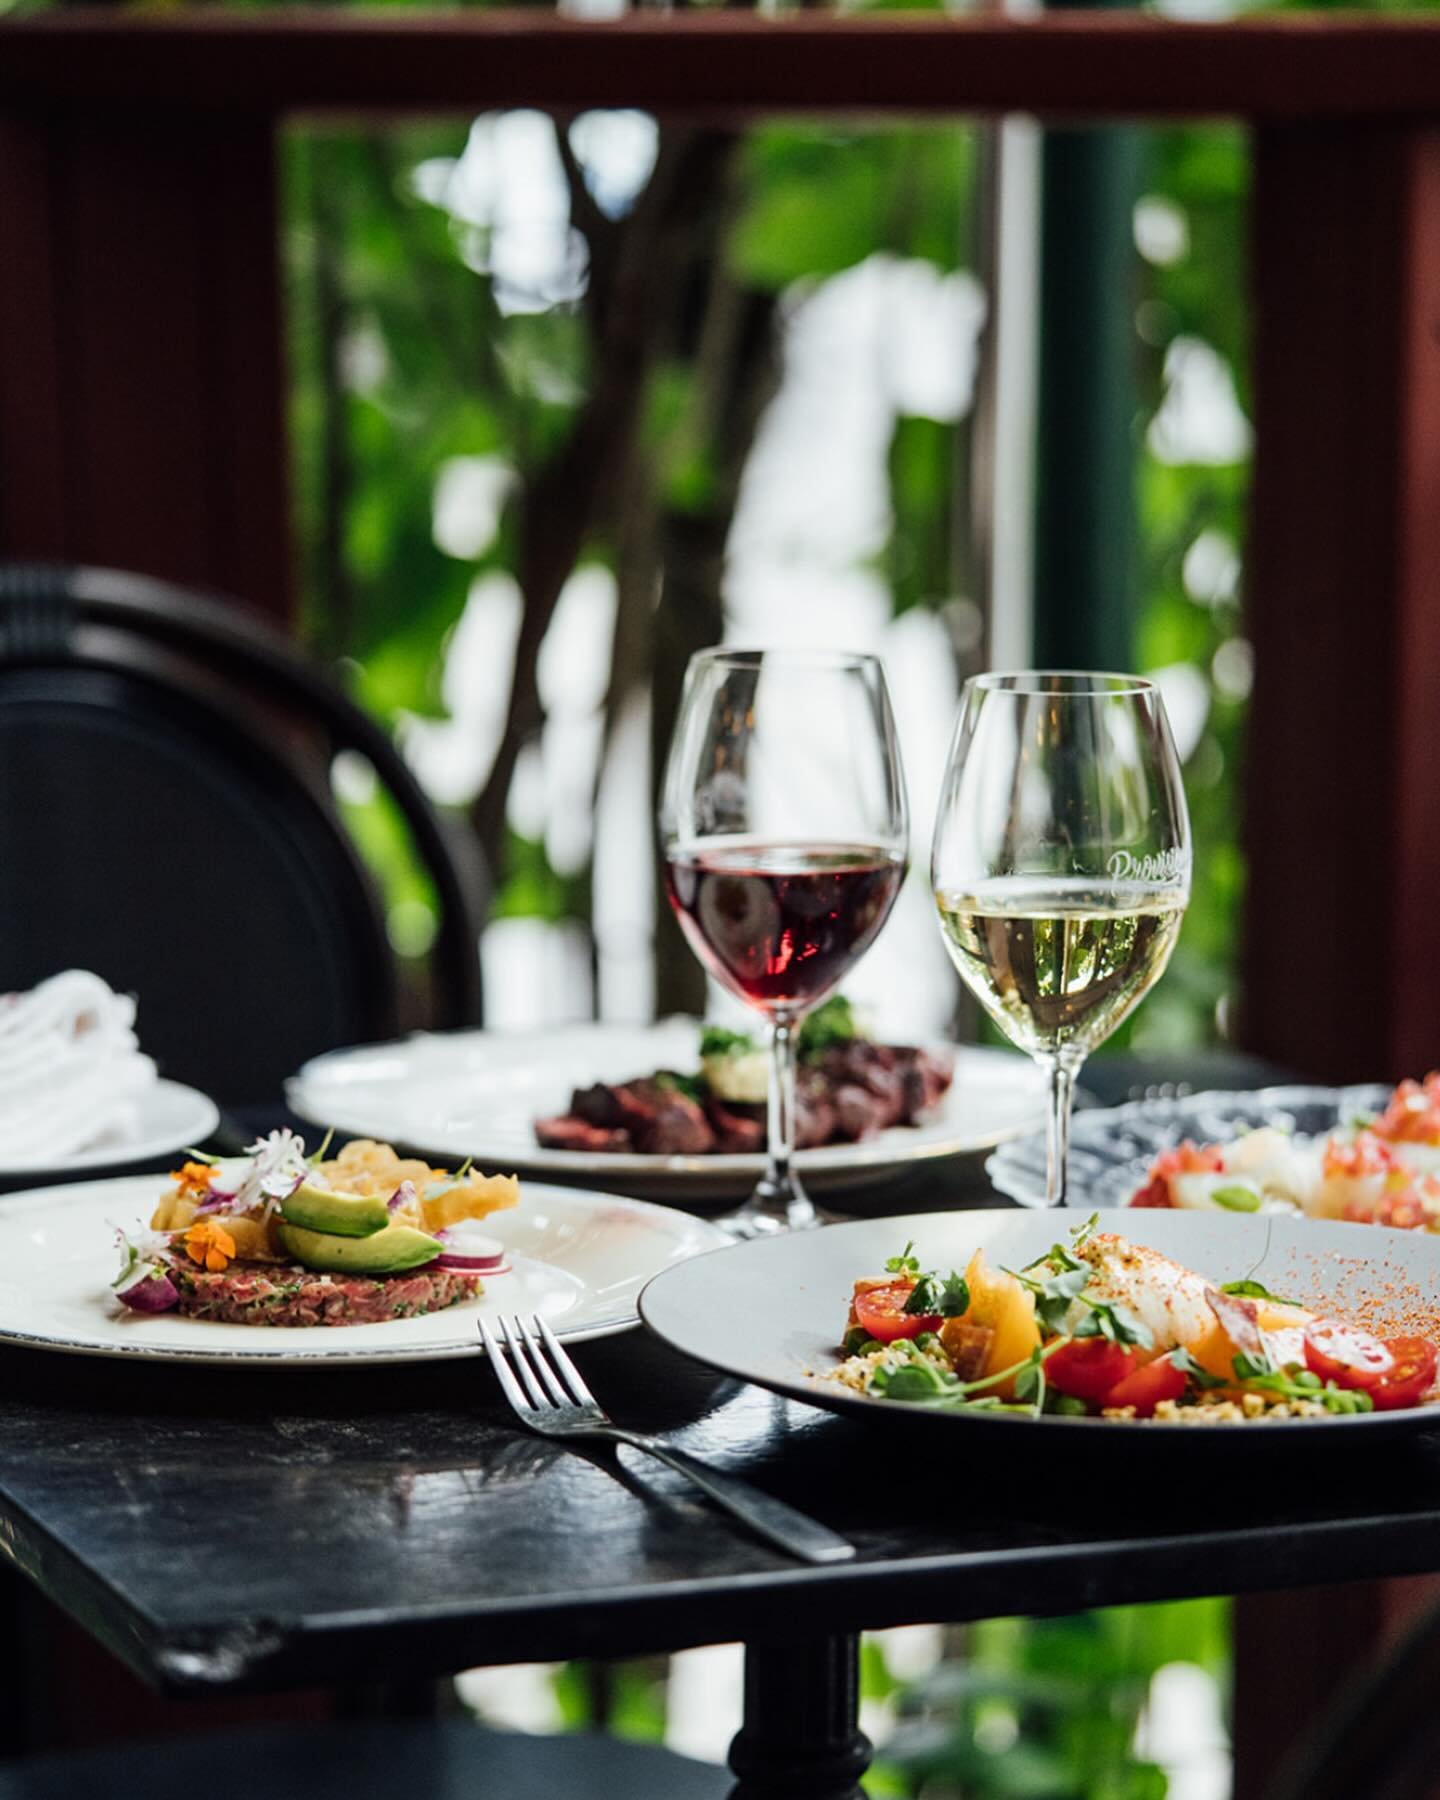 🌞 Notre terrasse est ouverte! Venez profiter du soleil en savourant de d&eacute;licieux plats en plein air. R&eacute;servez maintenant!🍹🍴

 #terrasse #restaurant #&eacute;t&eacute; #baravin #montreal #cocktail #cocktails #vin